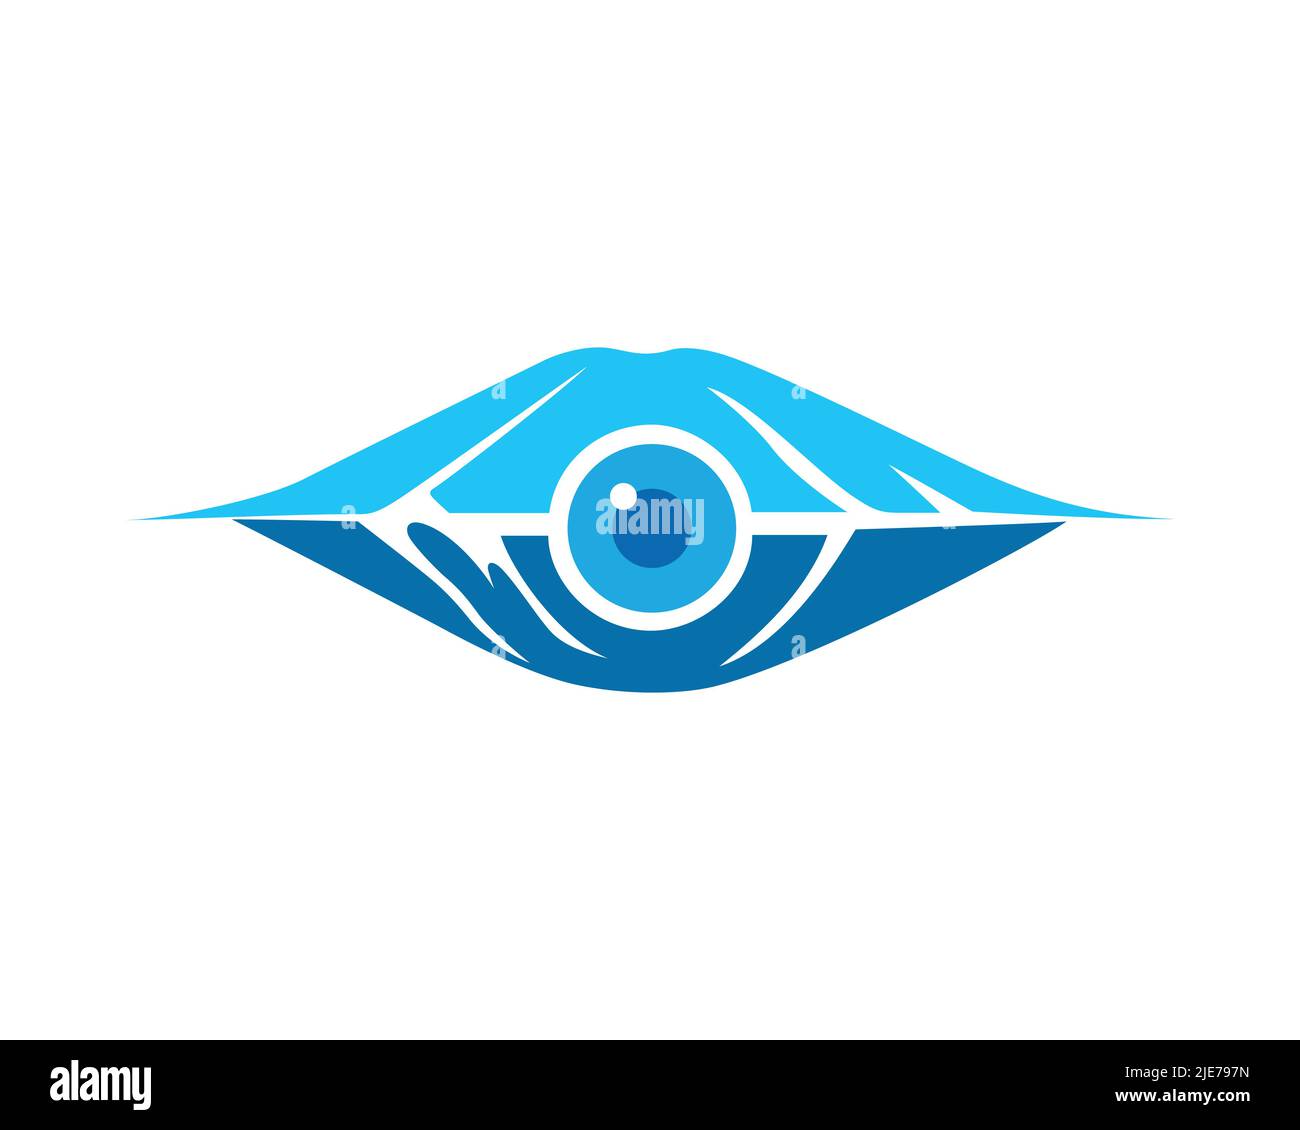 Simple et créatif Eyesberg ou Iceberg combiné à l'illustration des yeux brillants Illustration de Vecteur